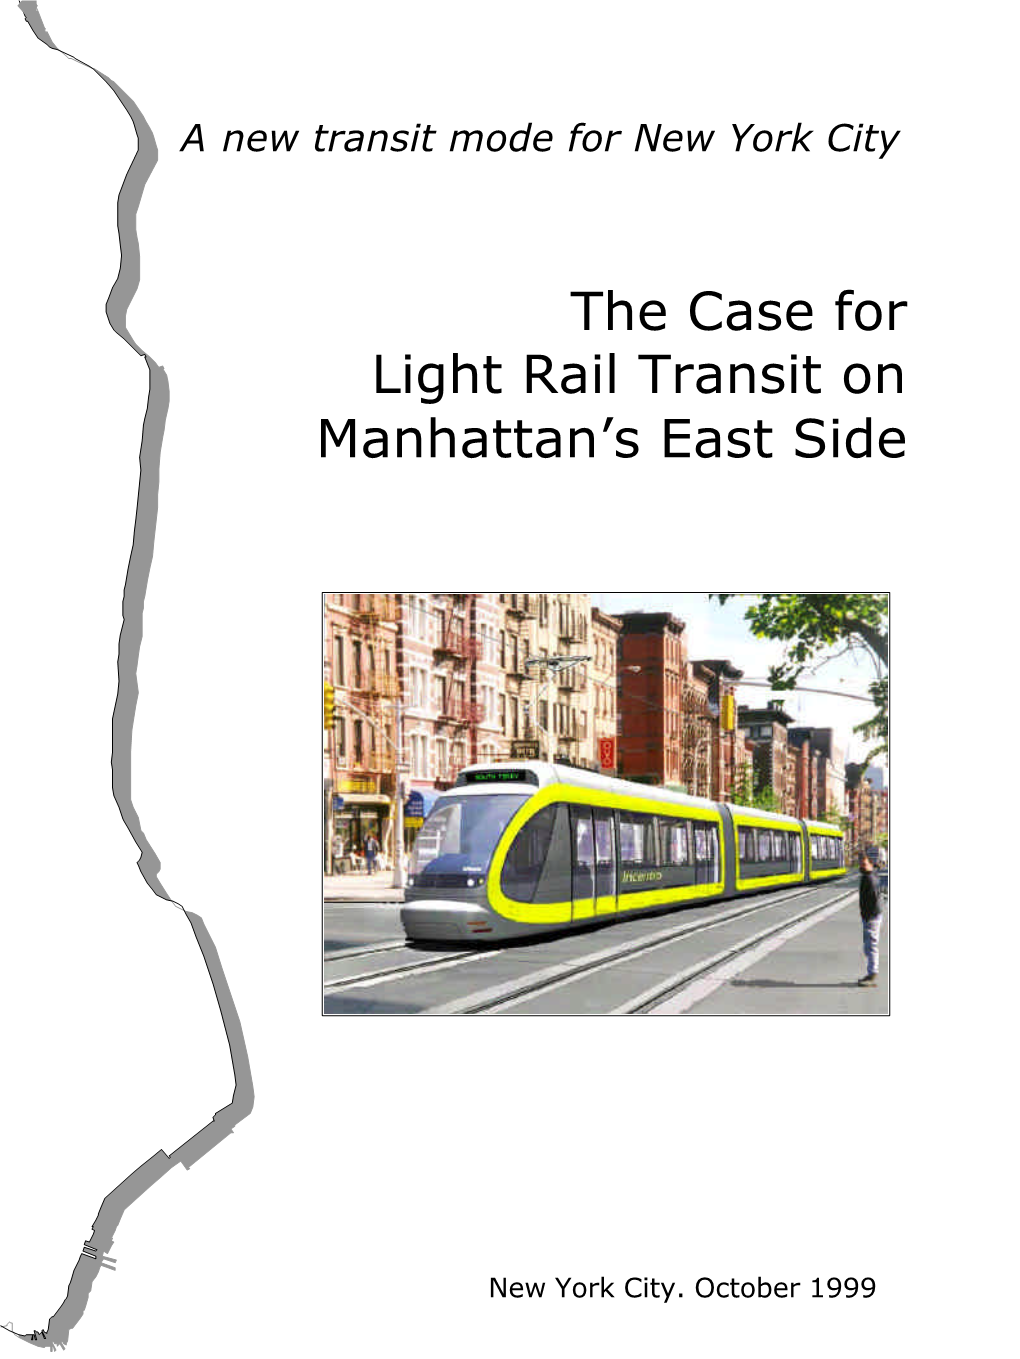 The Case for Light Rail Transit on Manhattan's East Side